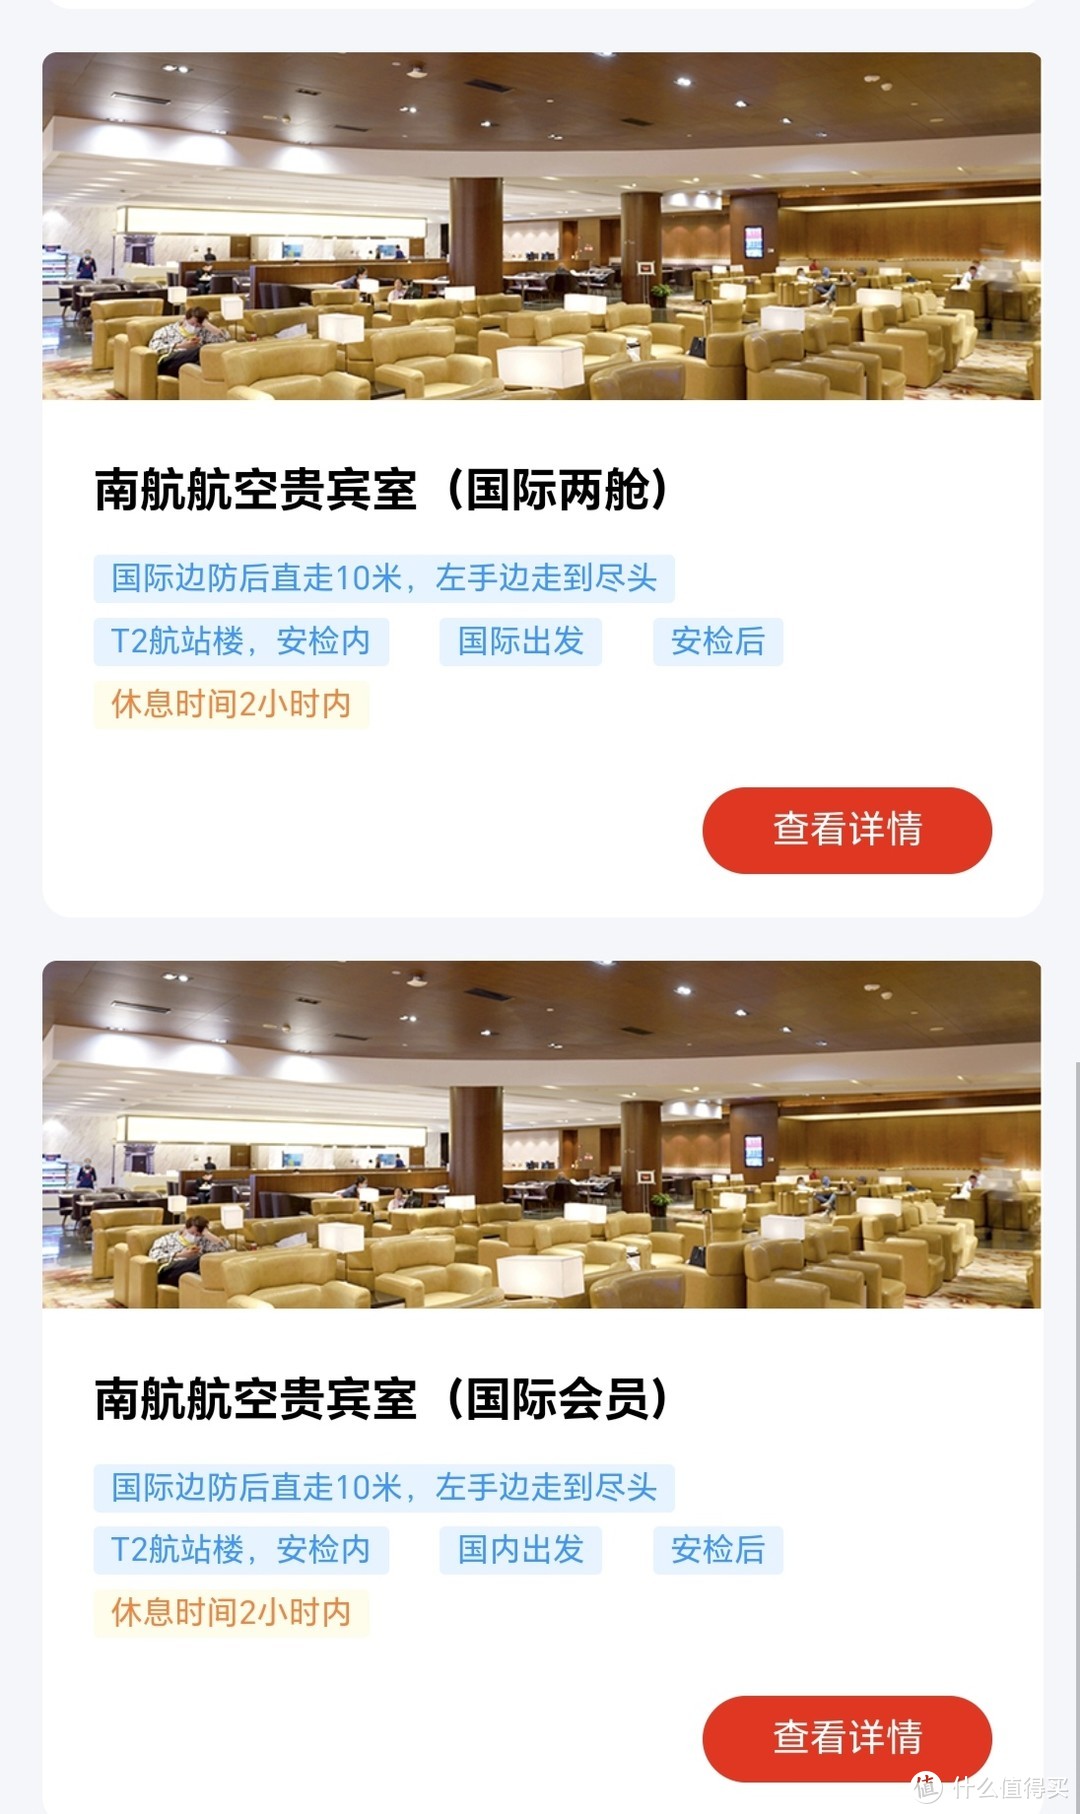 广州白云国际机场贵宾厅休息室